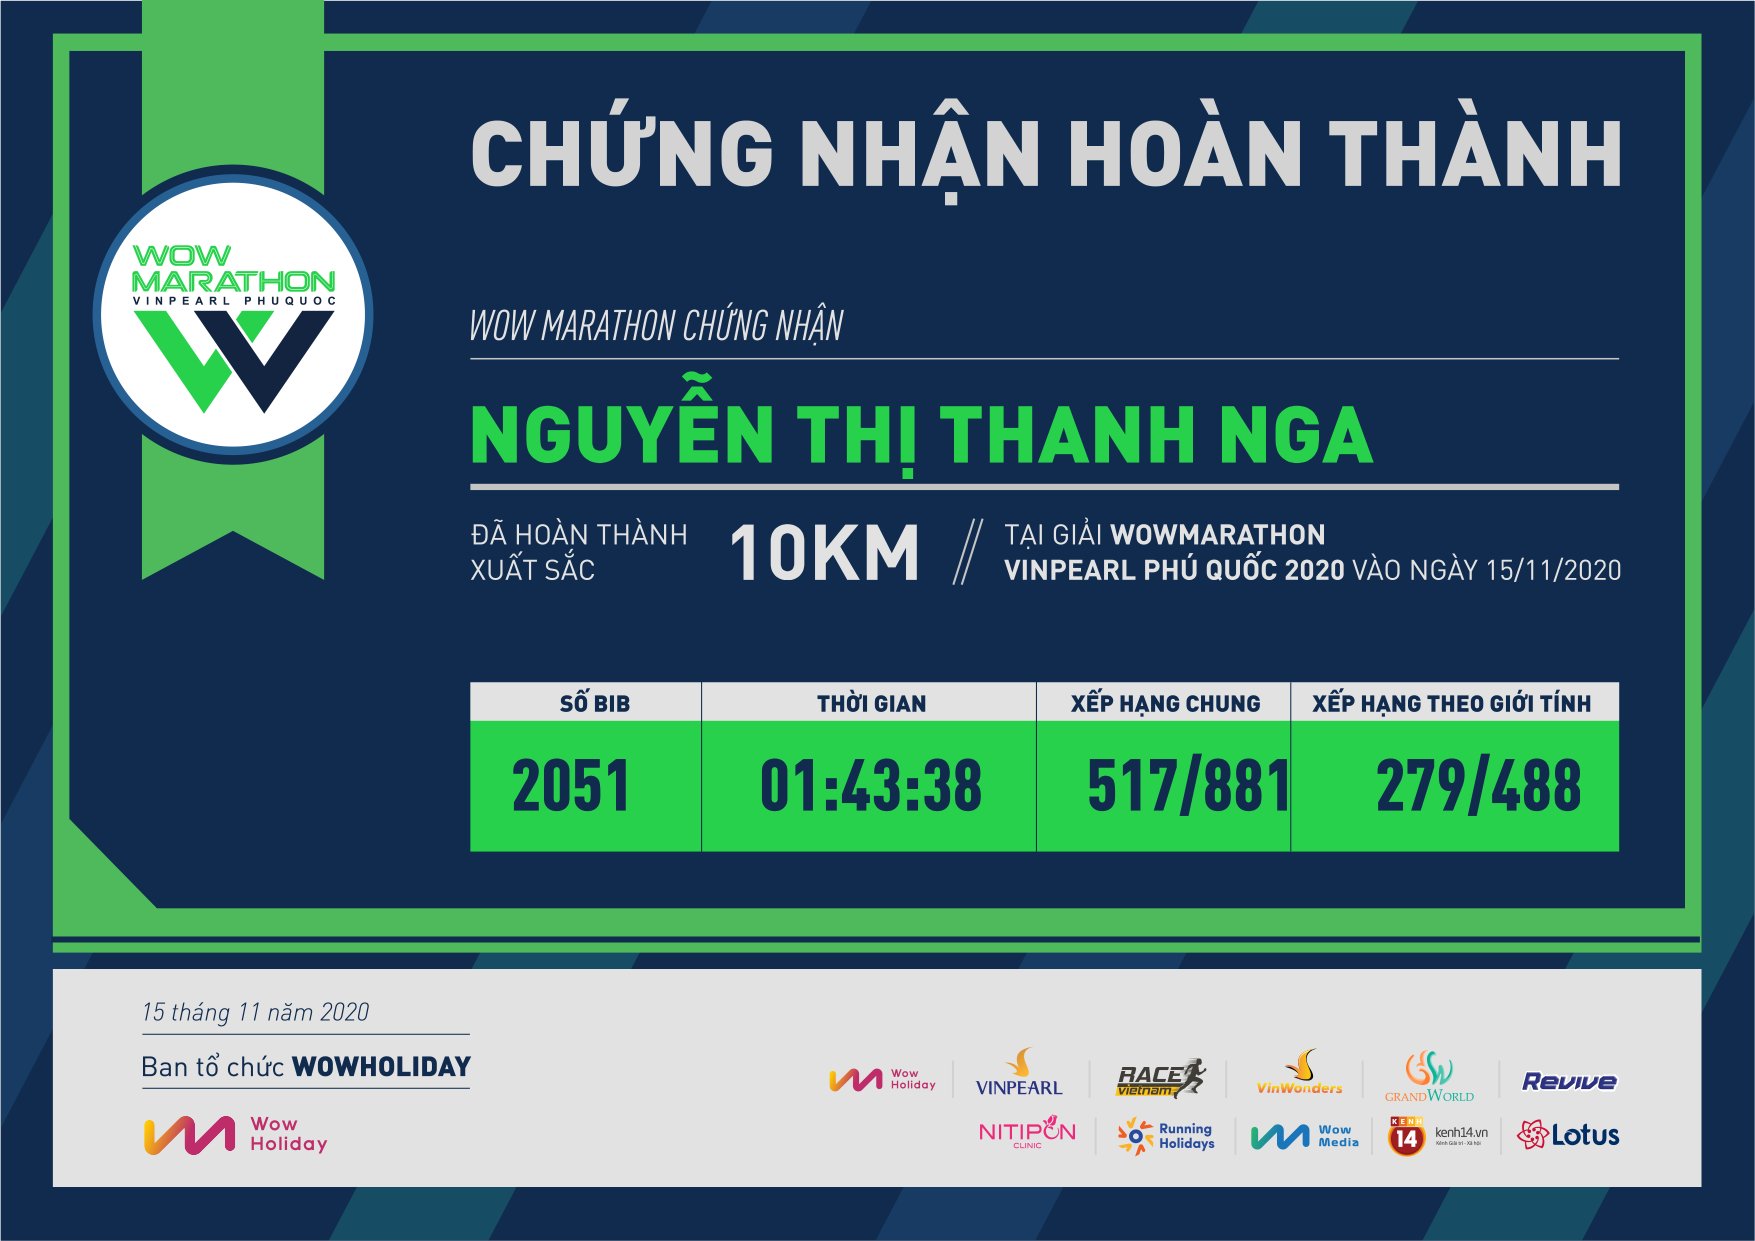 2051 - Nguyễn Thị Thanh Nga